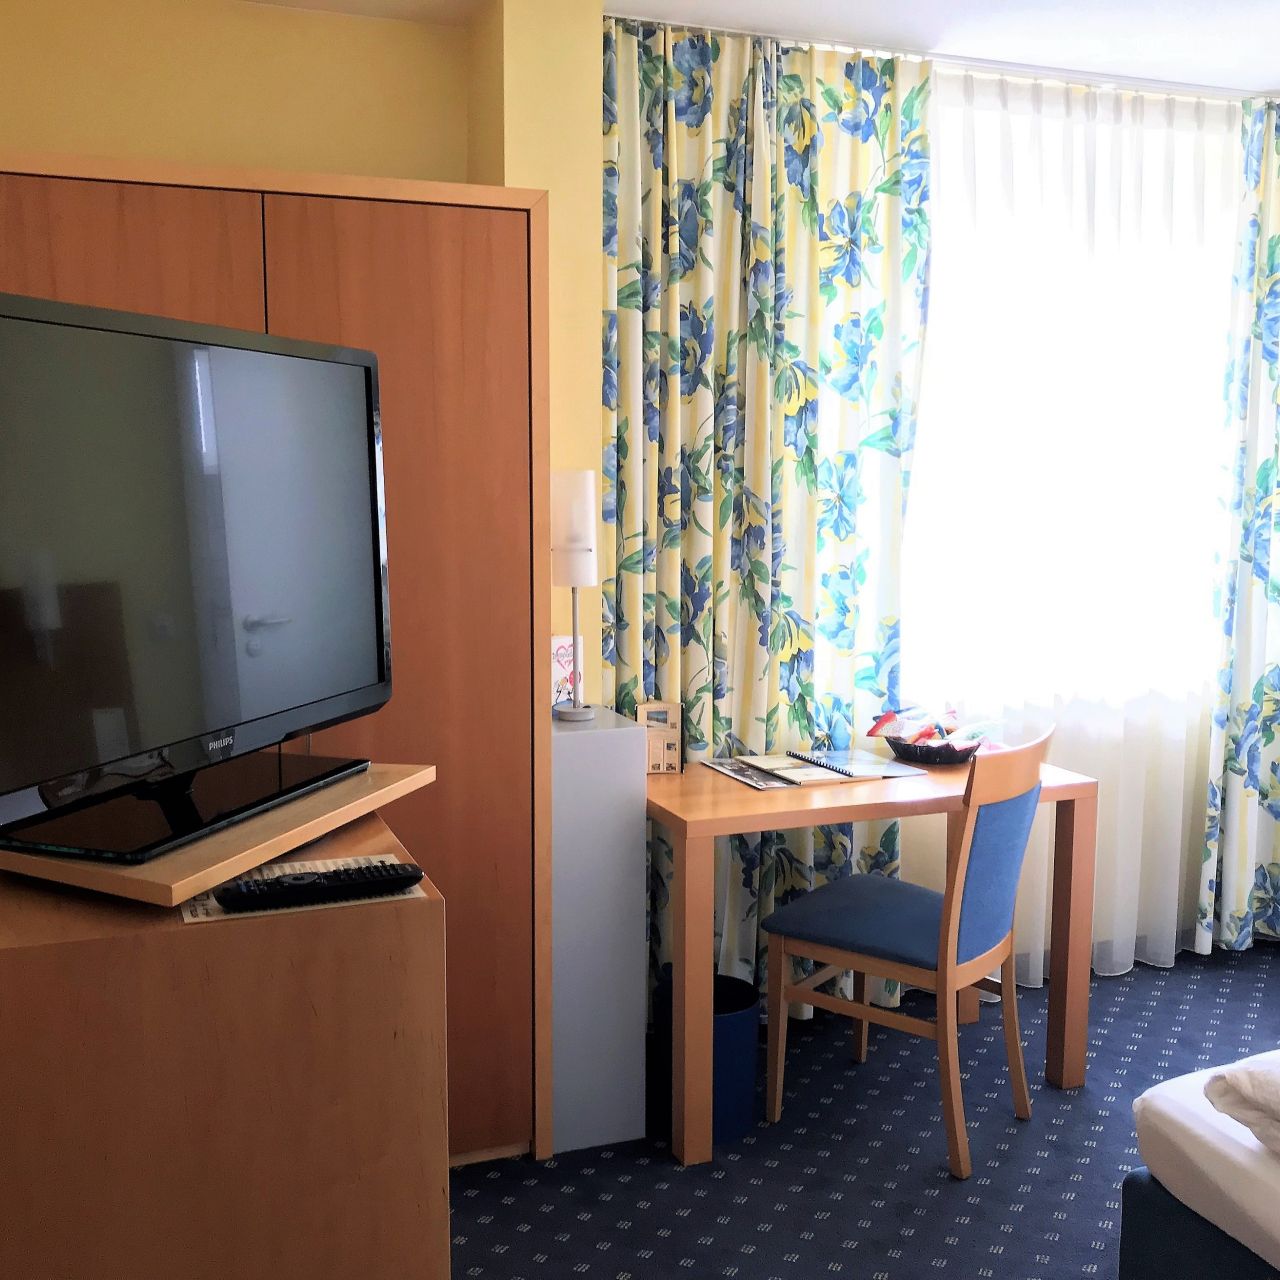 Akzent Hotel Möhringer Hof - Stuttgart - Great prices at HOTEL INFO